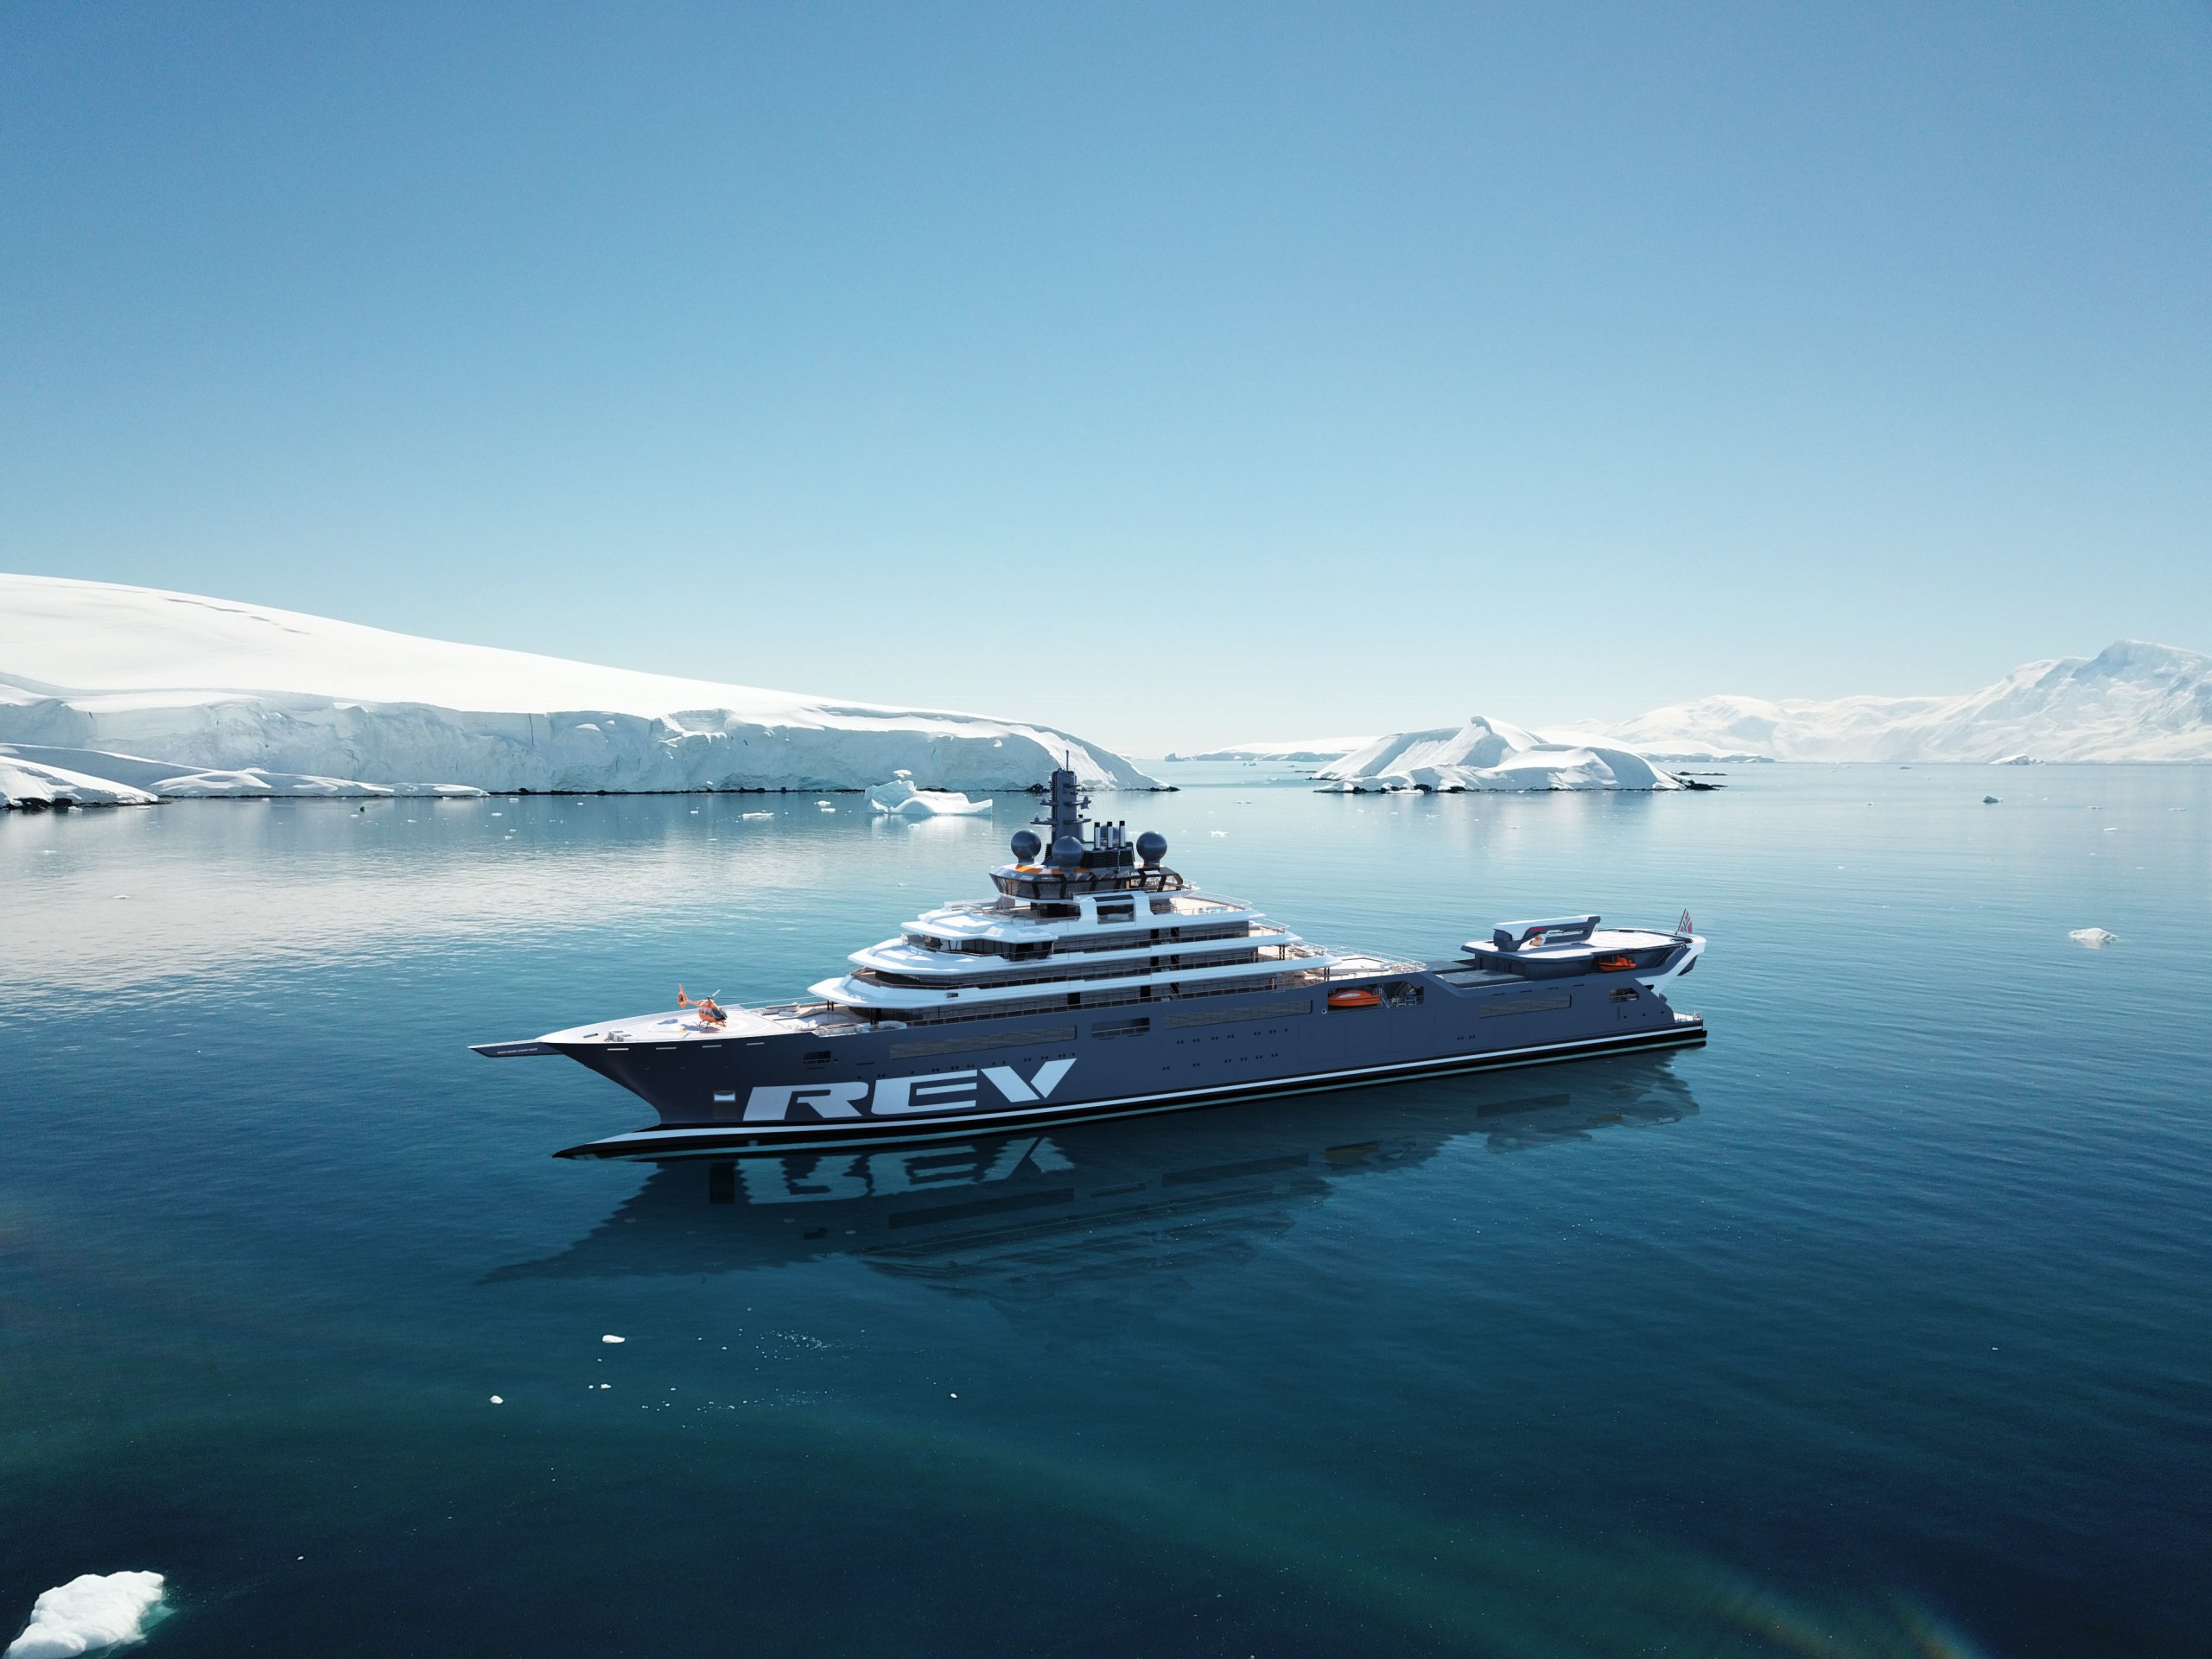 REV OCEAN Yacht • Kjell Inge Rokke $500M Superyacht • VARD • 2021